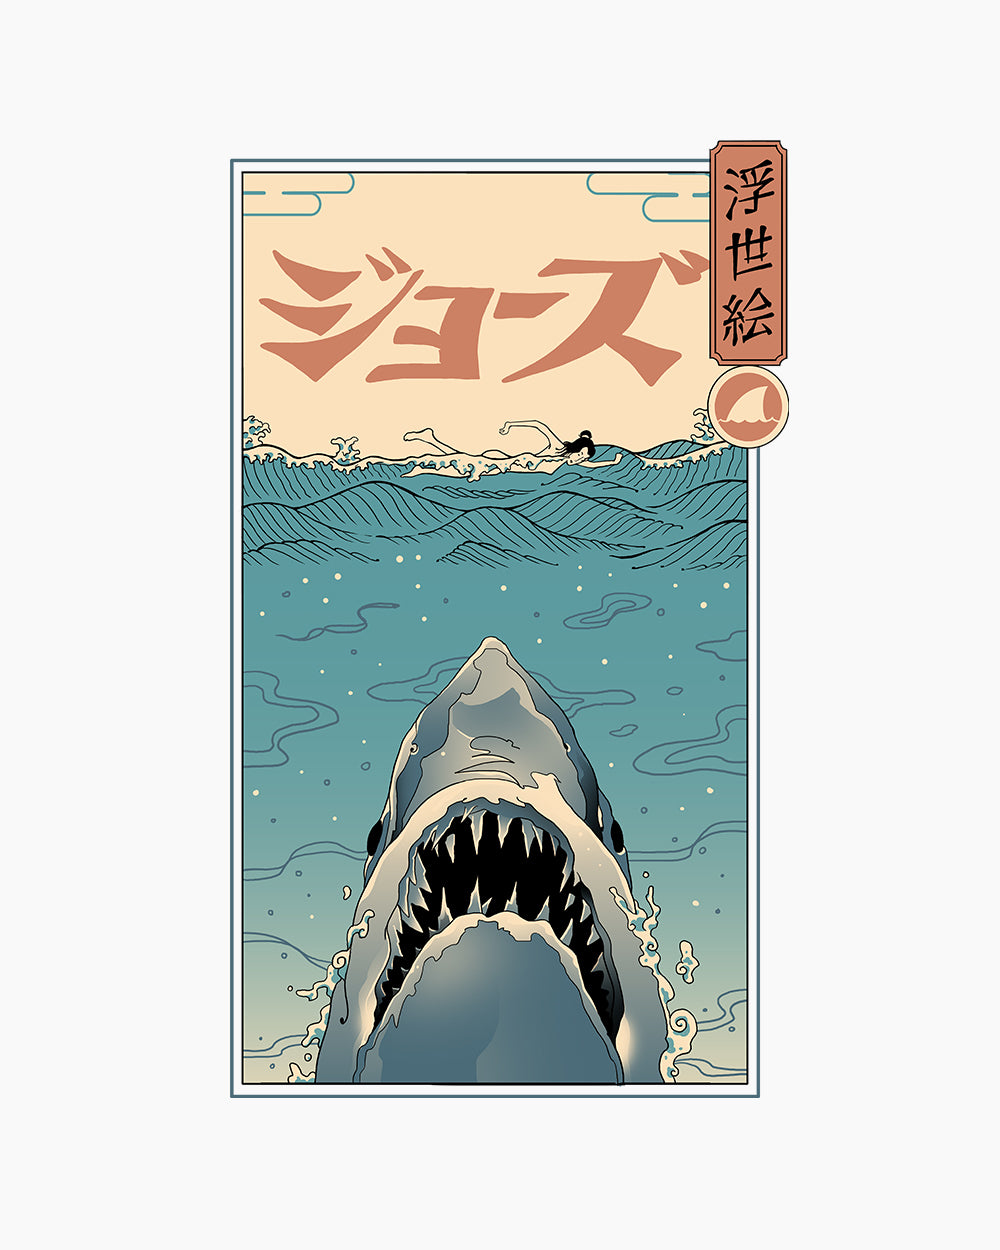 Shark Ukiyo-e T-Shirt Australia Online #colour_white